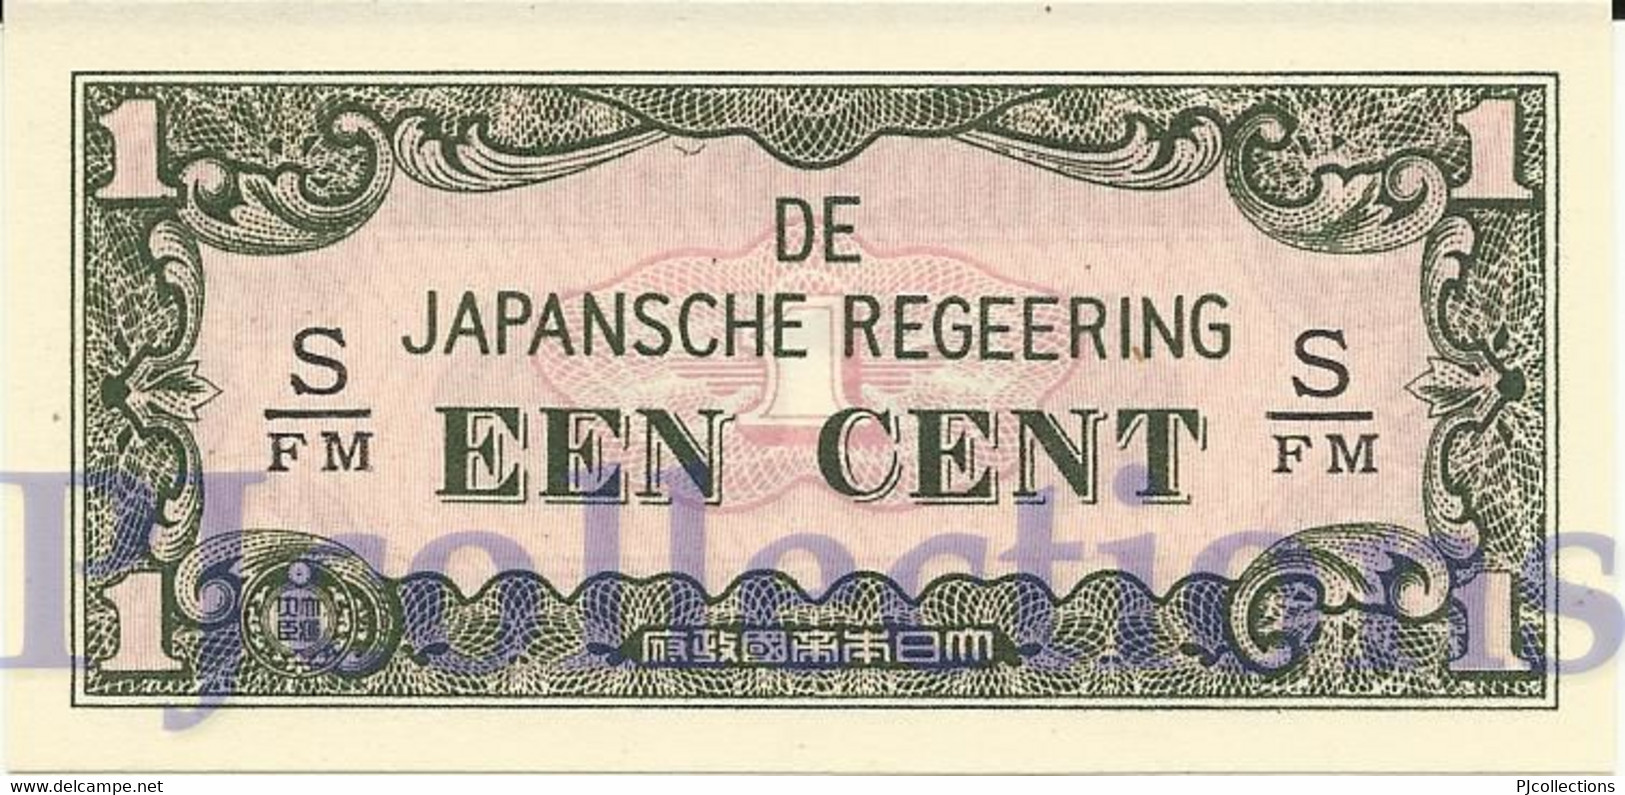 NETHERLANDS INDIES 1 CENT 1942 PICK 119b UNC - Dutch East Indies